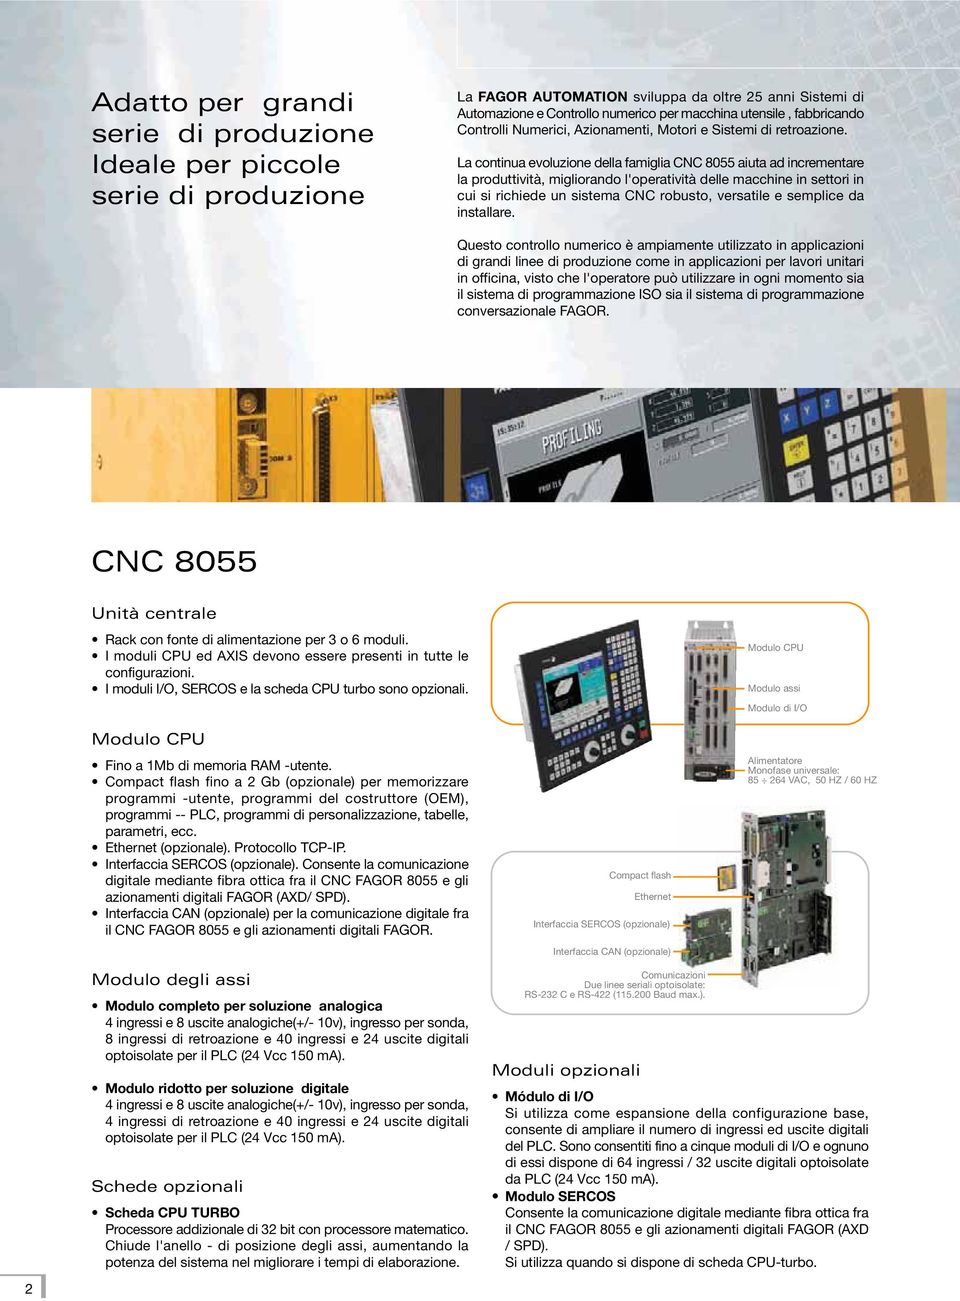 La continua evoluzione della famiglia CNC 8055 aiuta ad incrementare la produttività, migliorando l'operatività delle macchine in settori in cui si richiede un sistema CNC robusto, versatile e